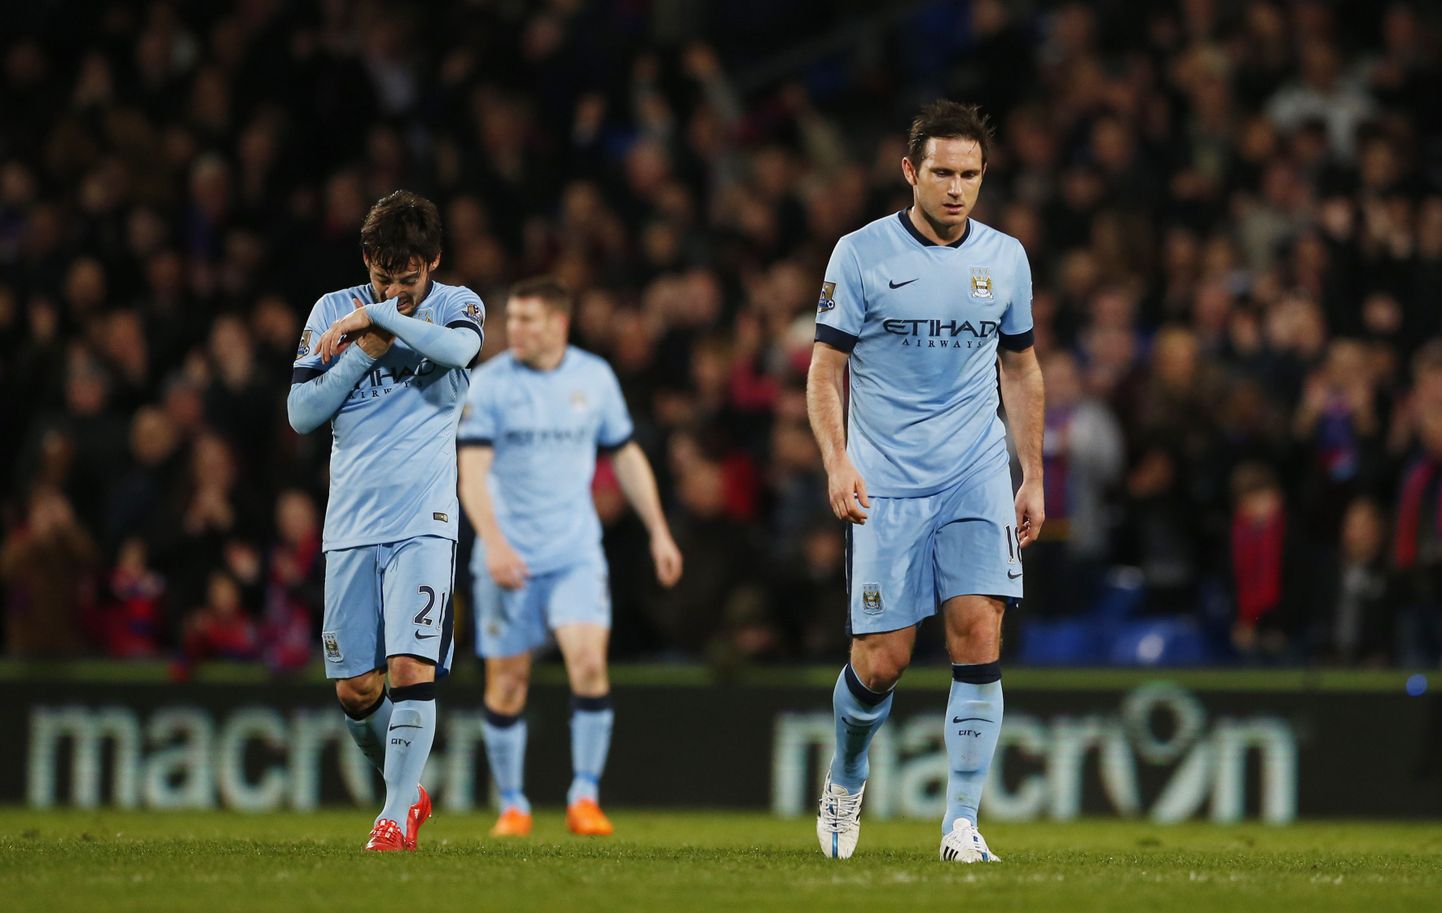 Pettunud Manchester City mängijad David Silva (vasakul) ja Frank Lampard pärast kaotust Crystal Palace'ile.